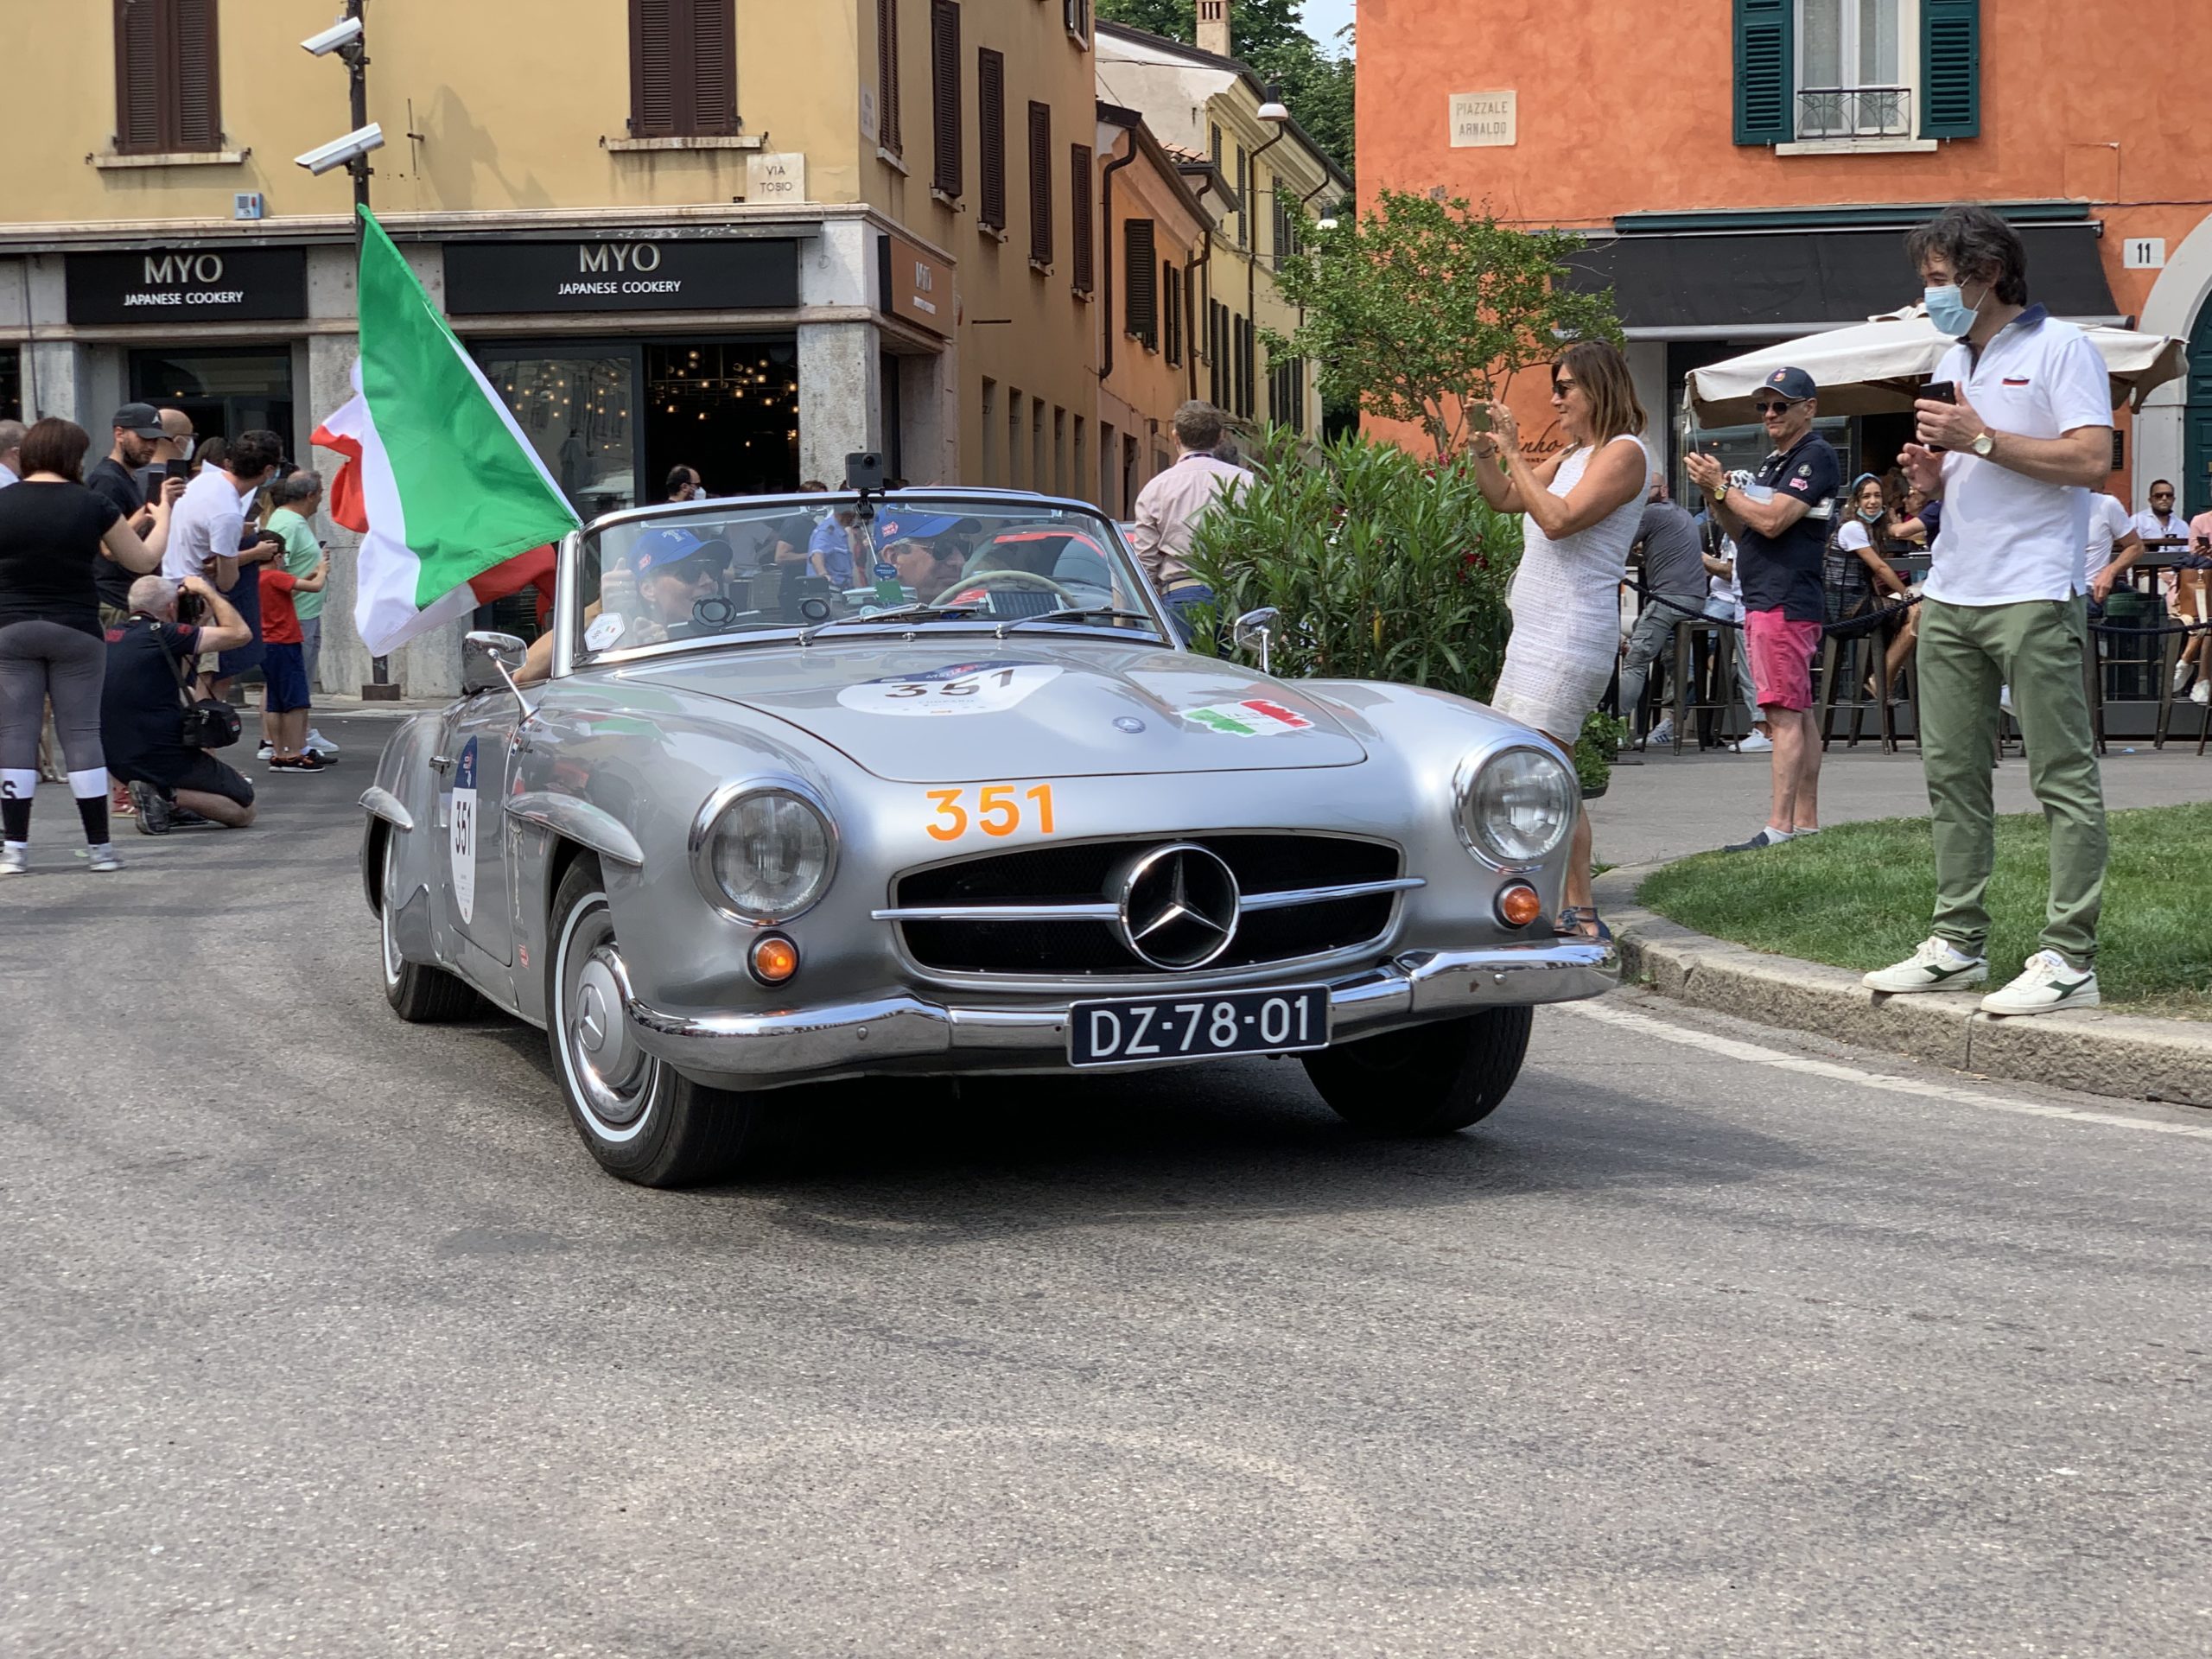 Mercedes-Benz Team in Piazza Venezia start of the Mille Miglia